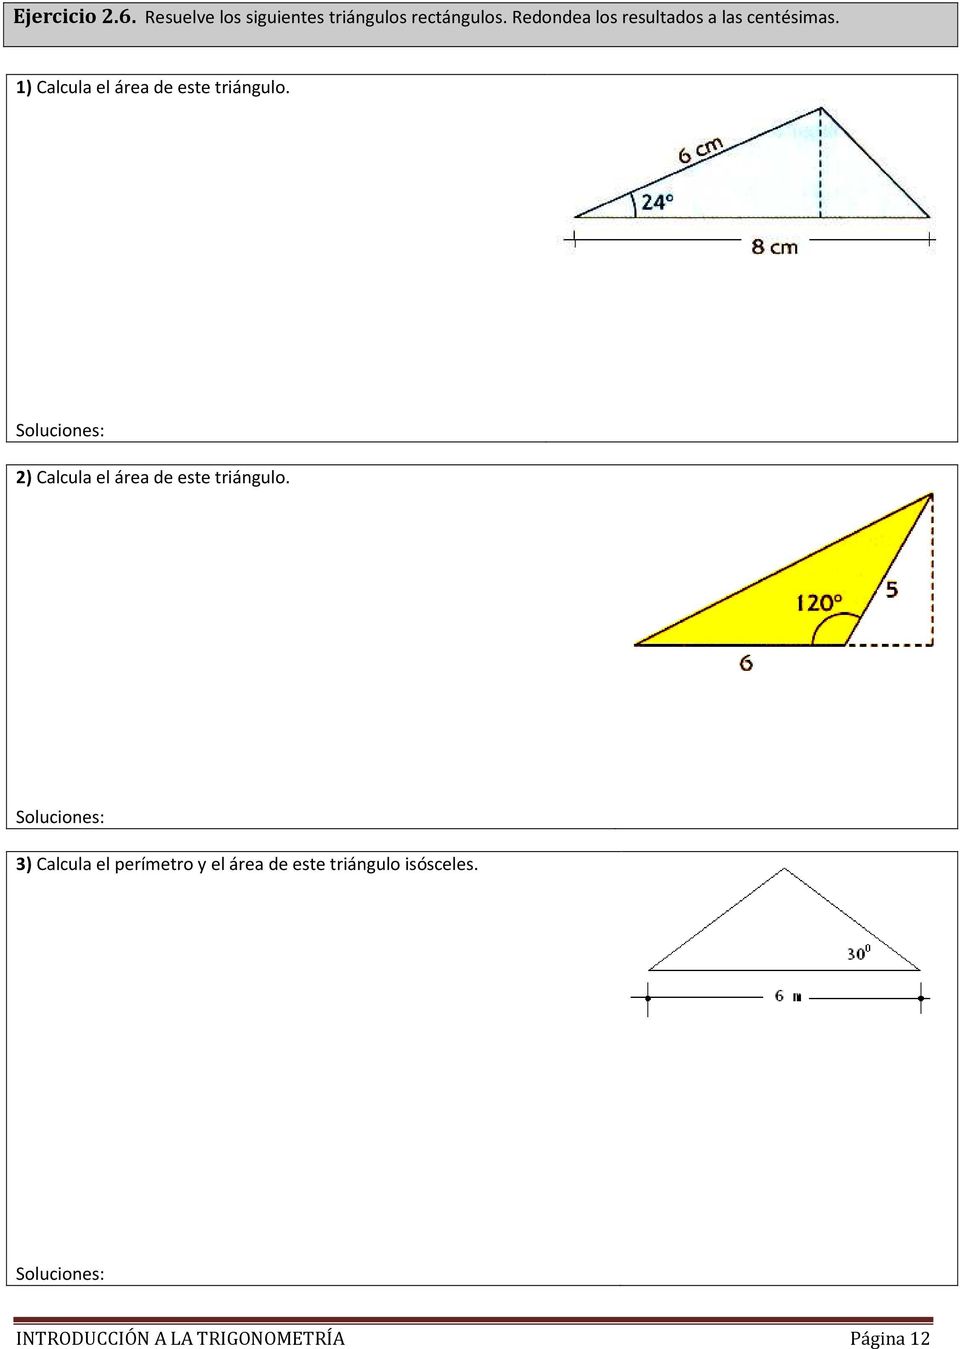 1) Calcula el área de este triángulo.